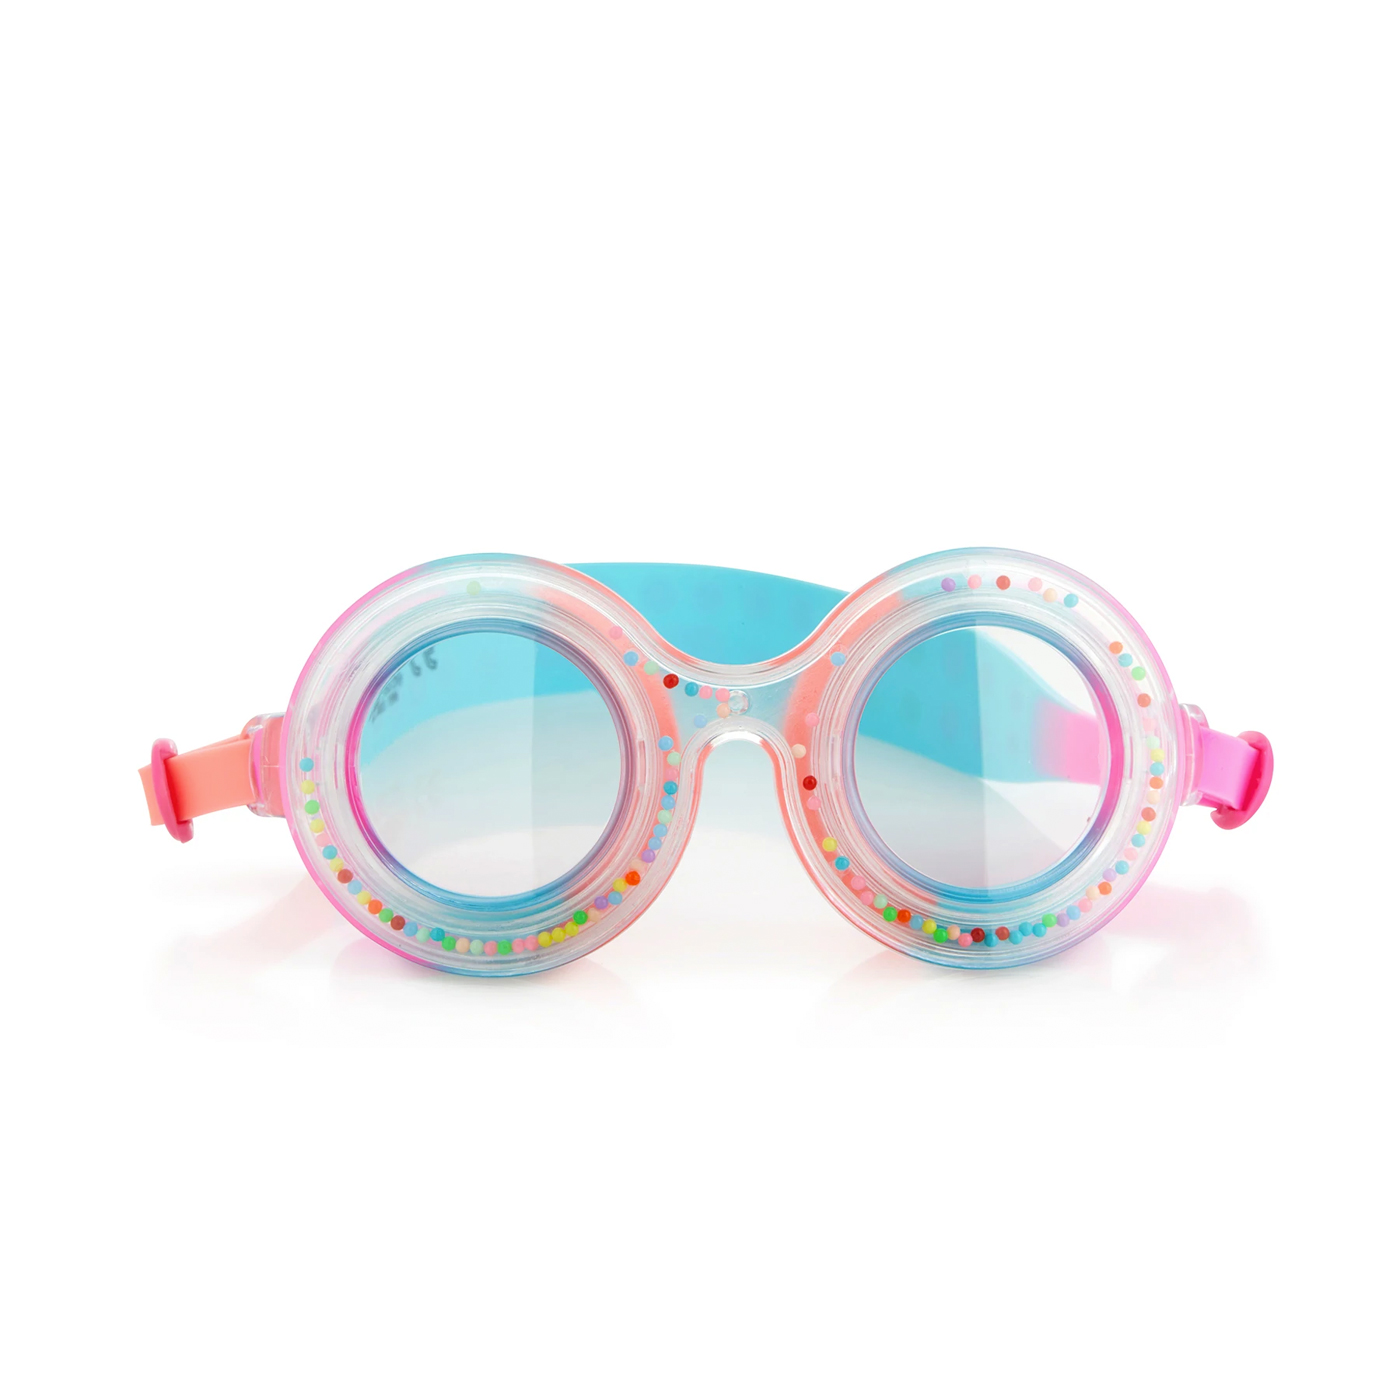 BLING2O Bling2o Double Bubble Licious Deniz Gözlüğü  | Yummy Gummy